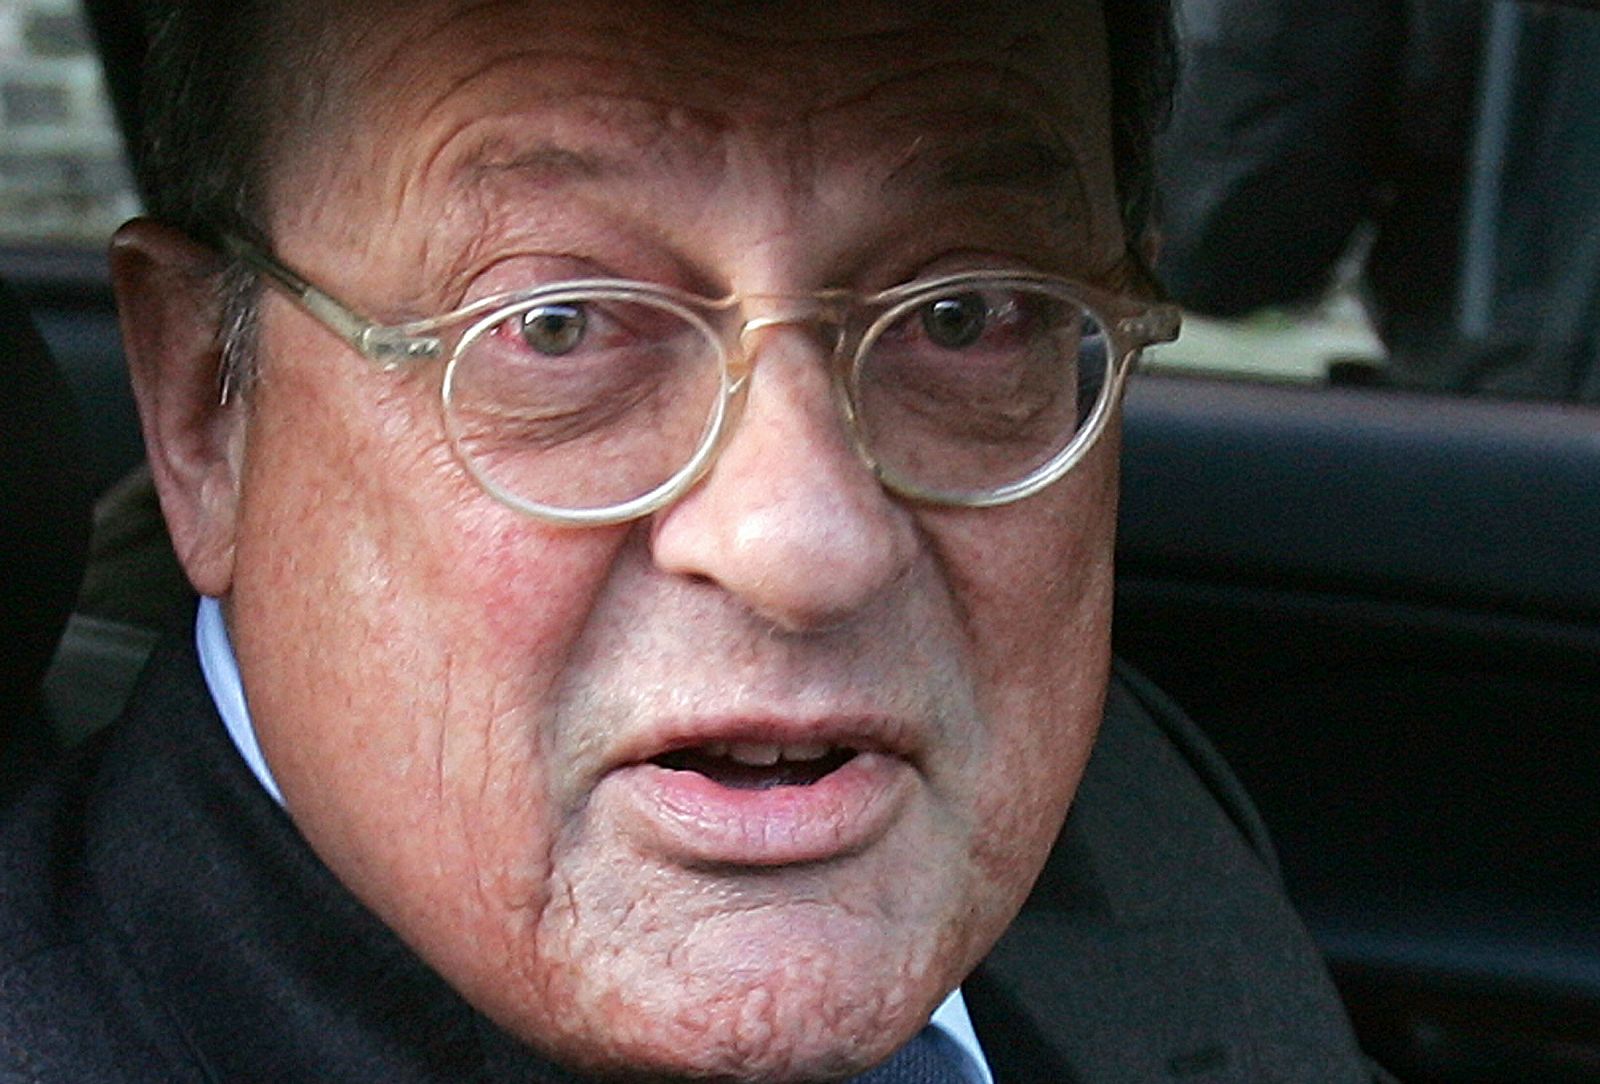 El abogado británico David Mills tendrá que pagar por mentir en dos juicios para favorecer al primer ministro italiano Silvio Berlusconi.